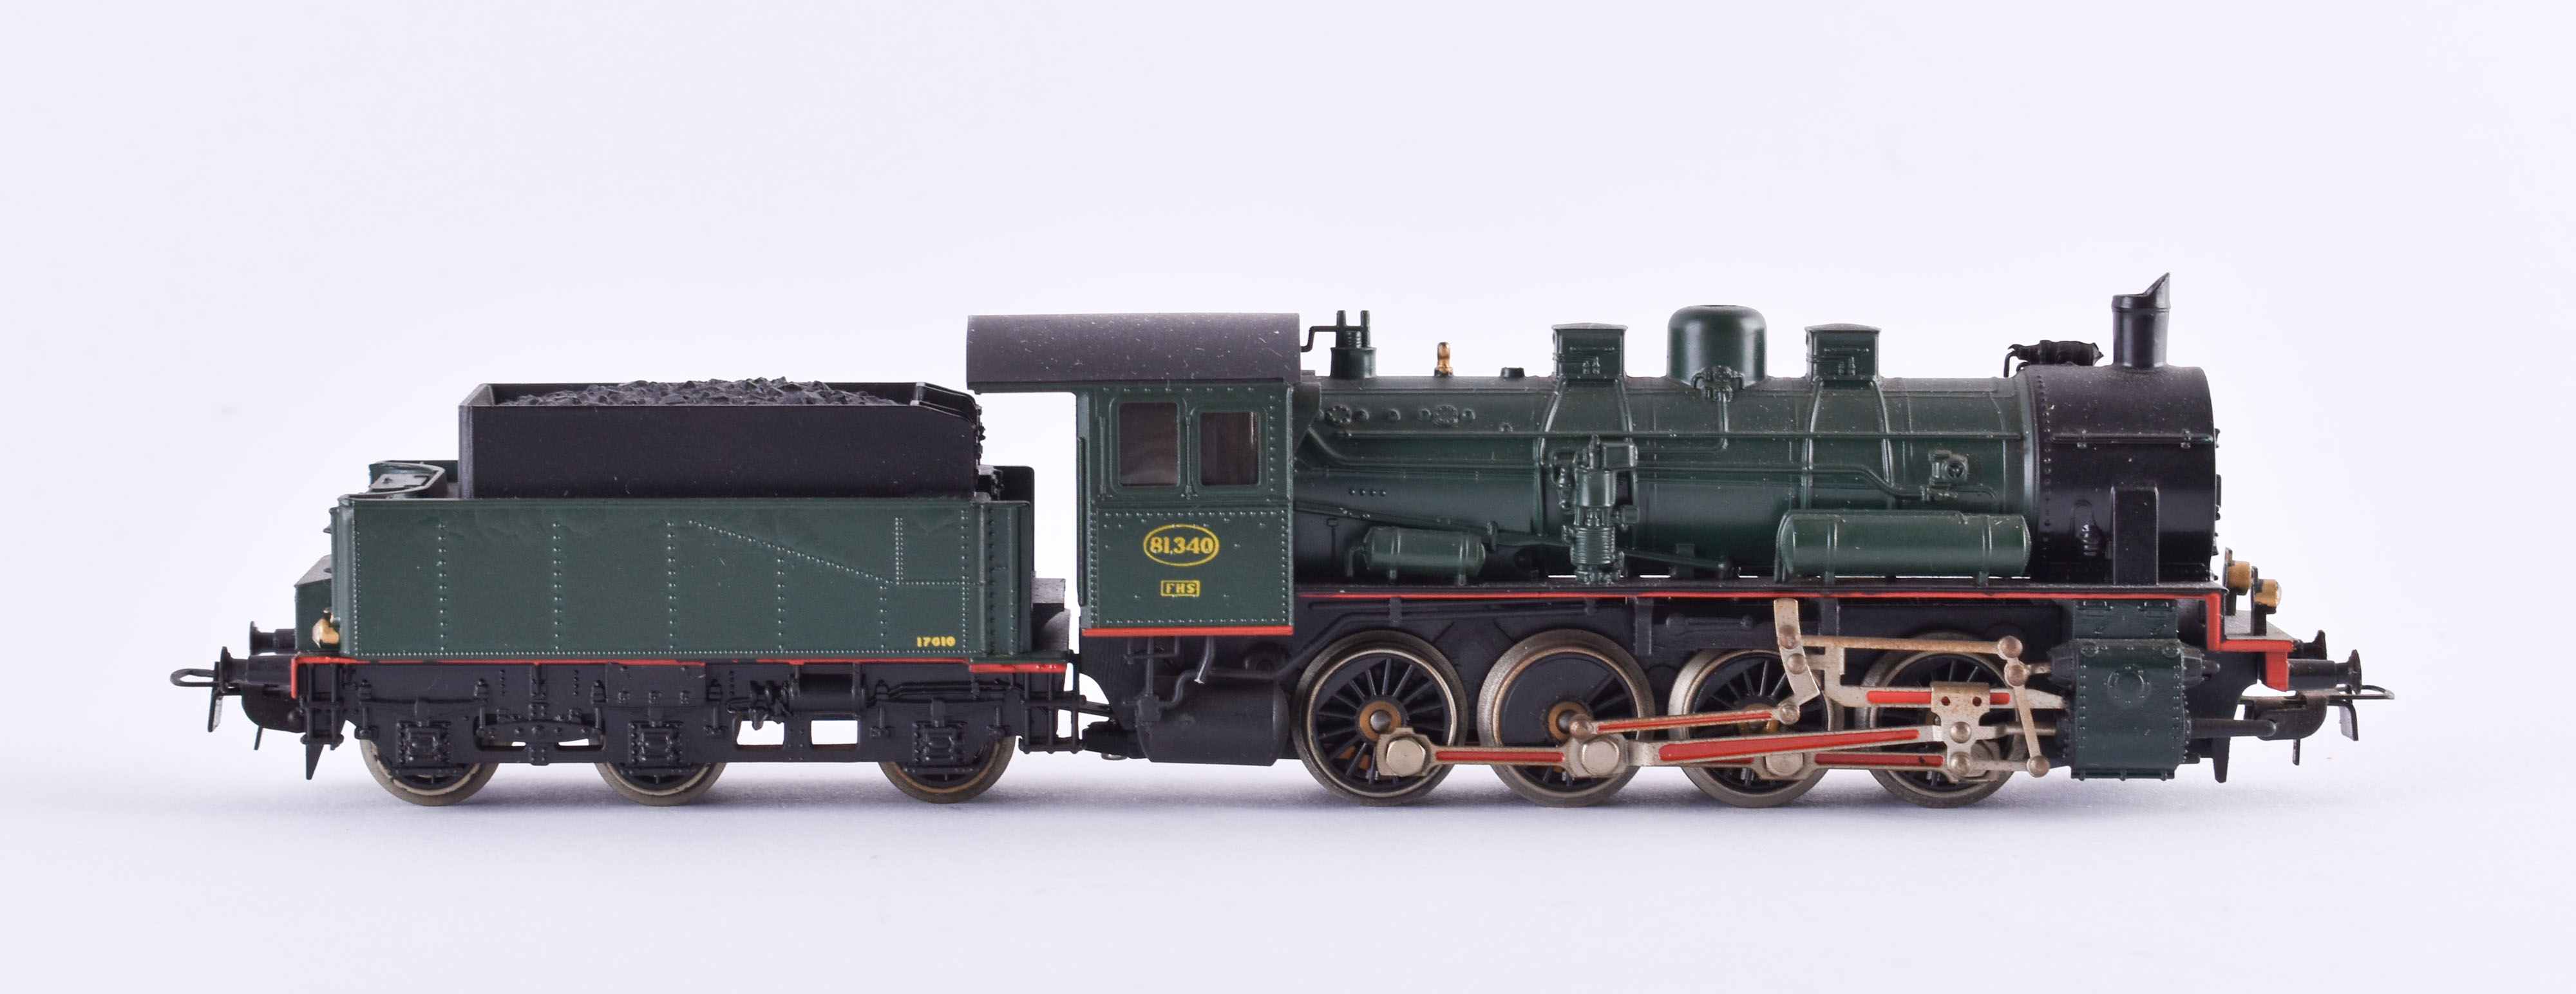 Steam locomotive 81340 with tender 17610 - Märklin